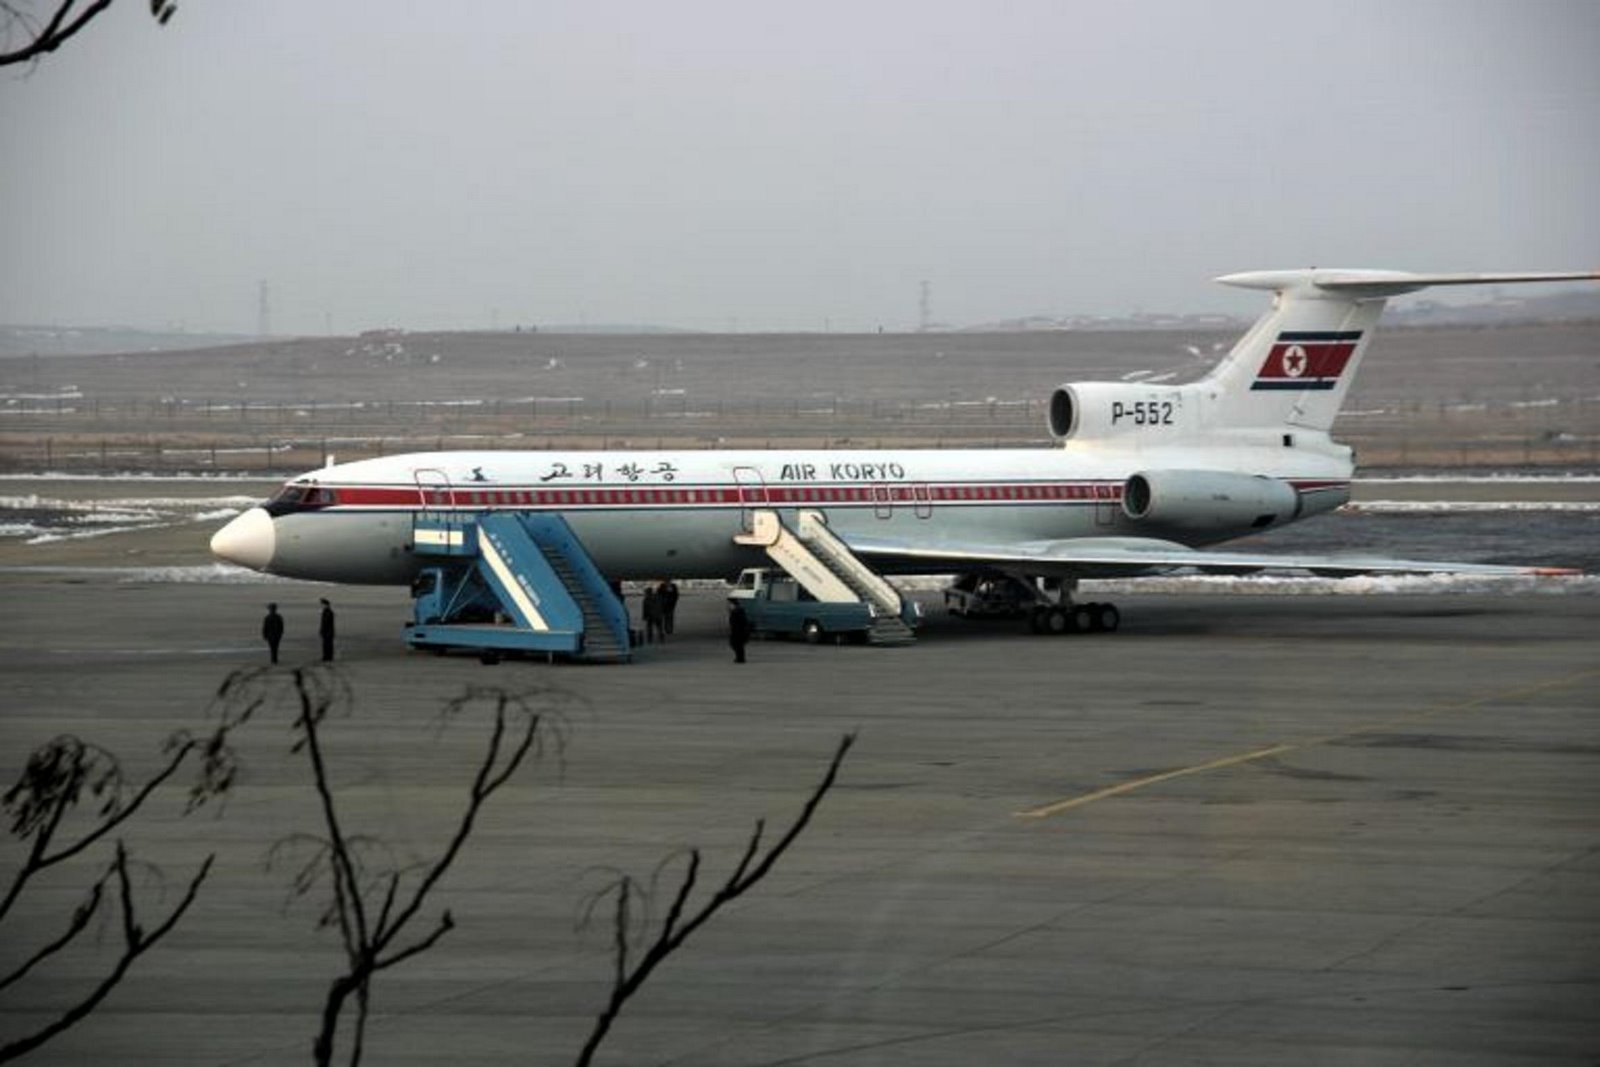 [TU-154B2+P-552+AIR+KORYO+PYONYANG.JPG]